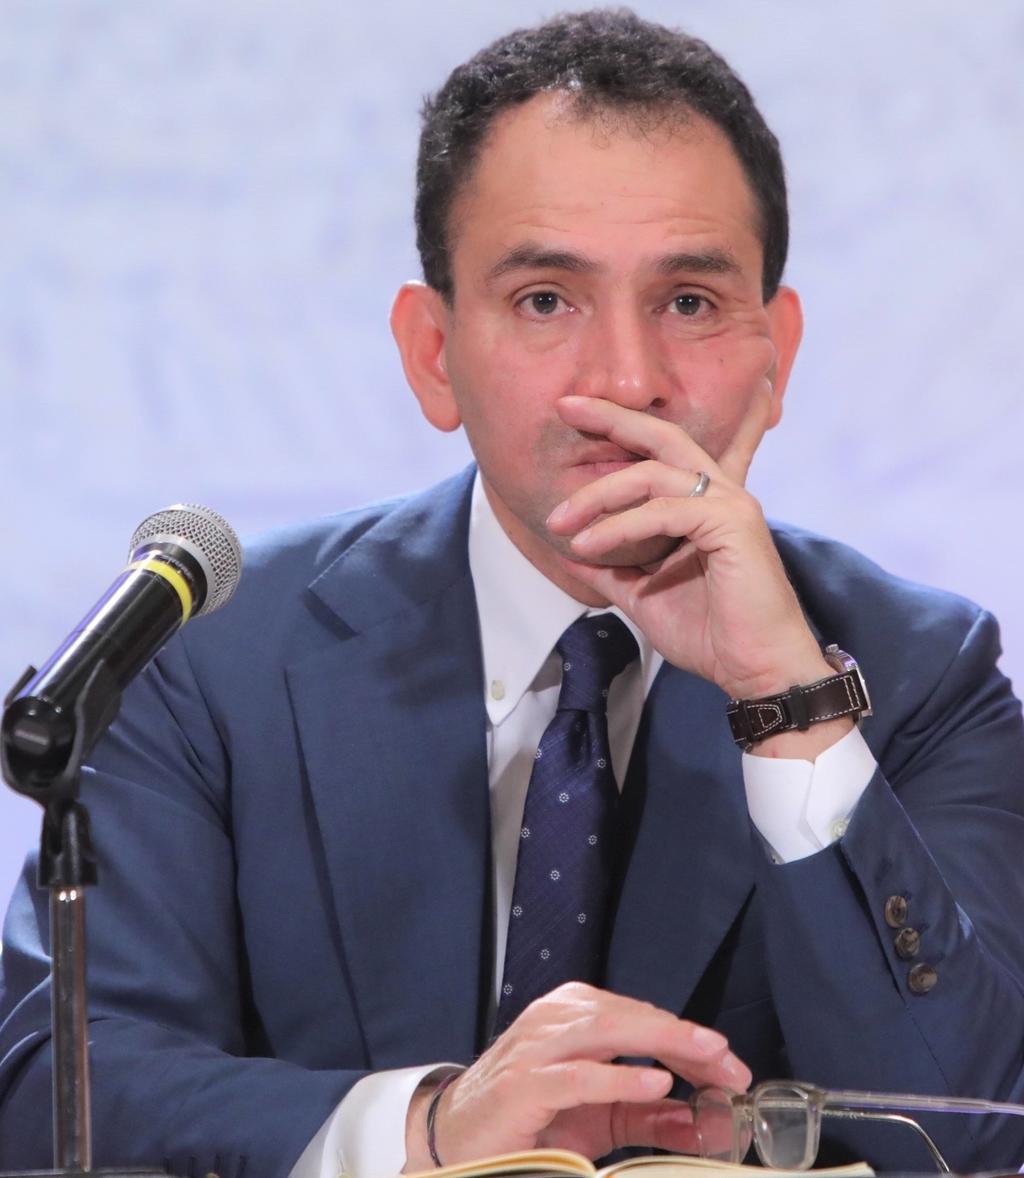 El nuevo secretario de Hacienda, Arturo Herrera aseguró que las finanzas de México son 'manejadas con responsabilidad' y tienen una 'coraza que le permite navegar en circunstancias difíciles si se diera el caso'. (EFE)